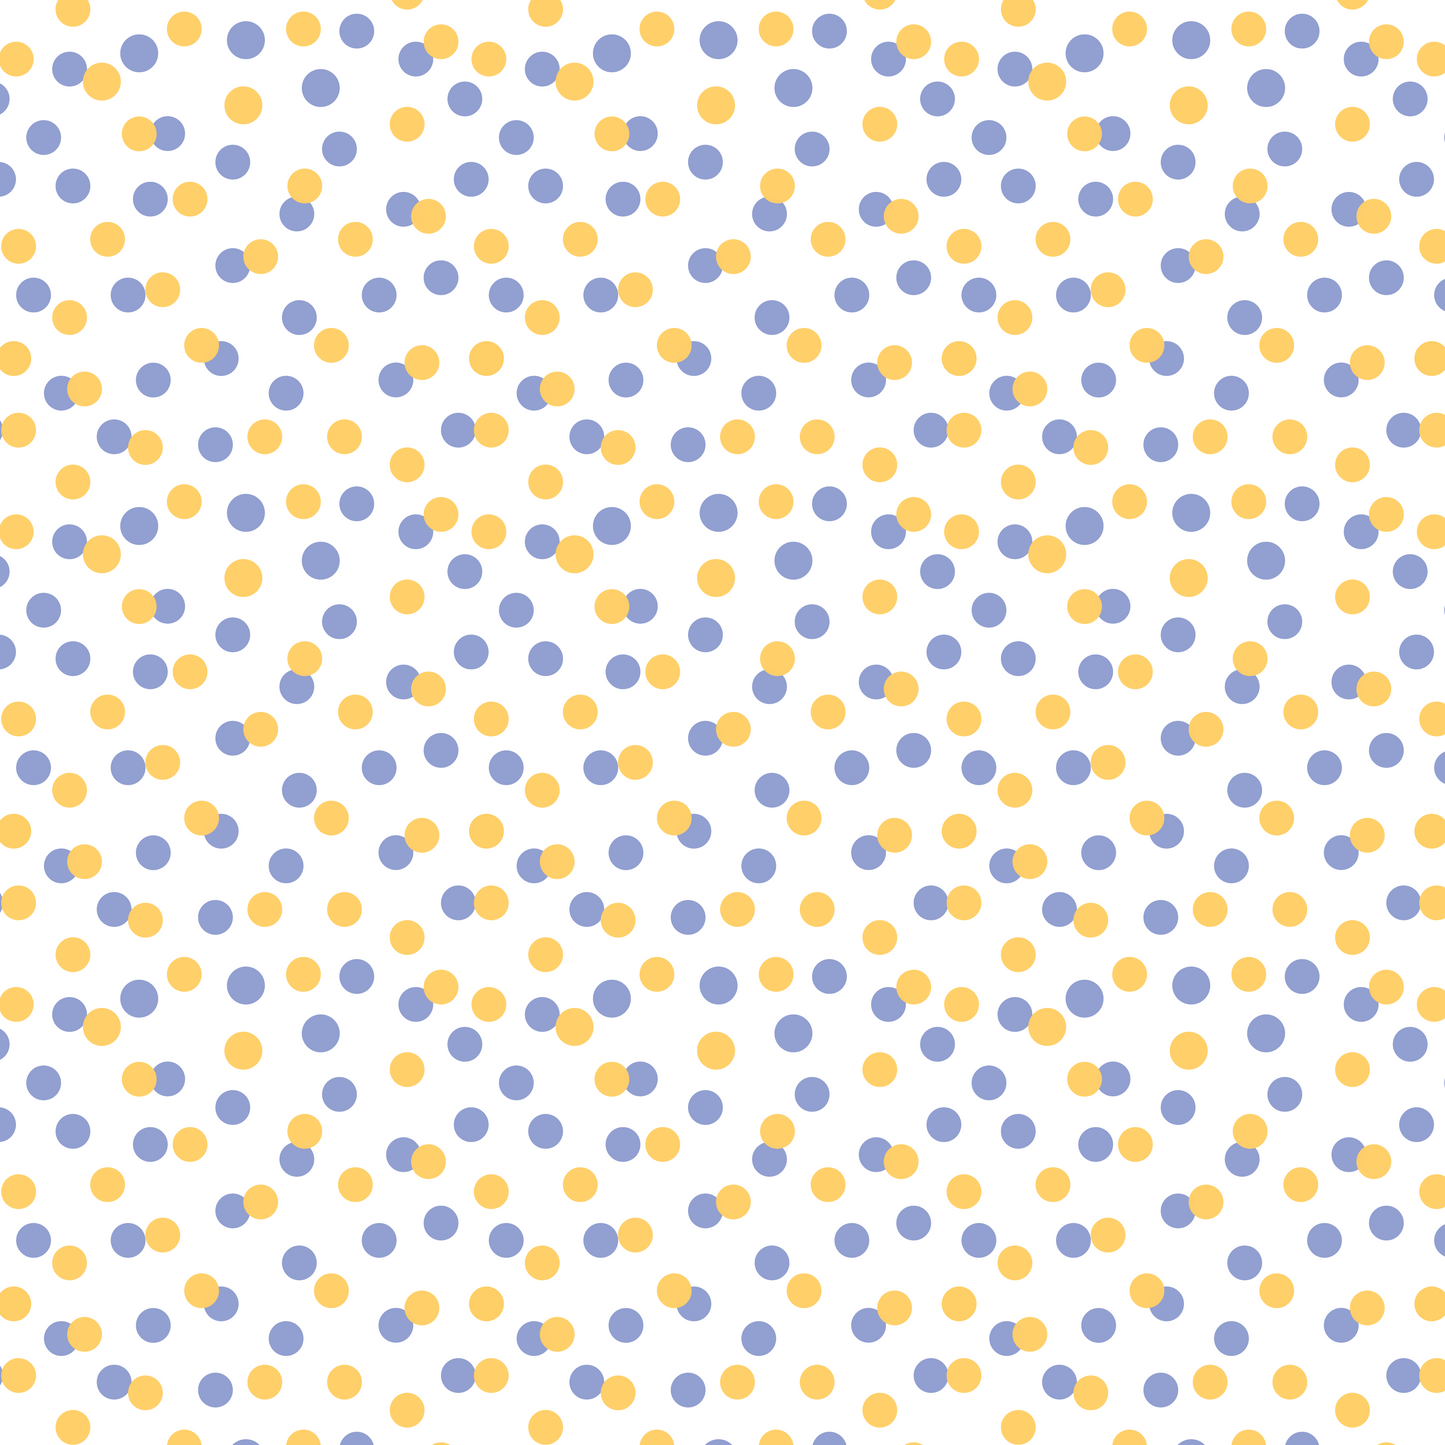 J'aime les abeilles - Points bleus et jaunes 004